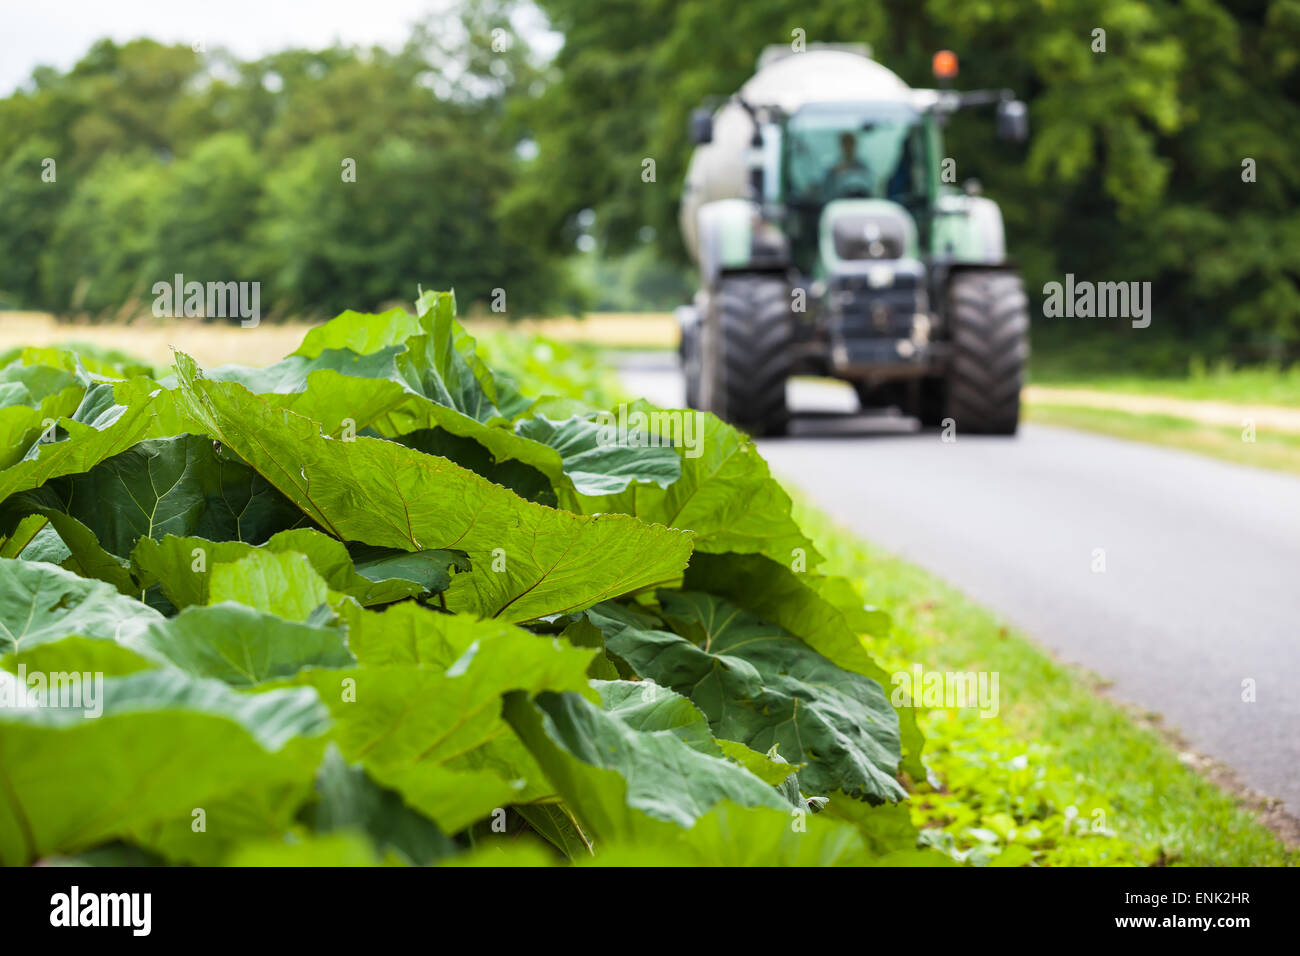 Grandi foglie verdi a lato di una strada di campagna, un trattore arriva lungo in background Foto Stock